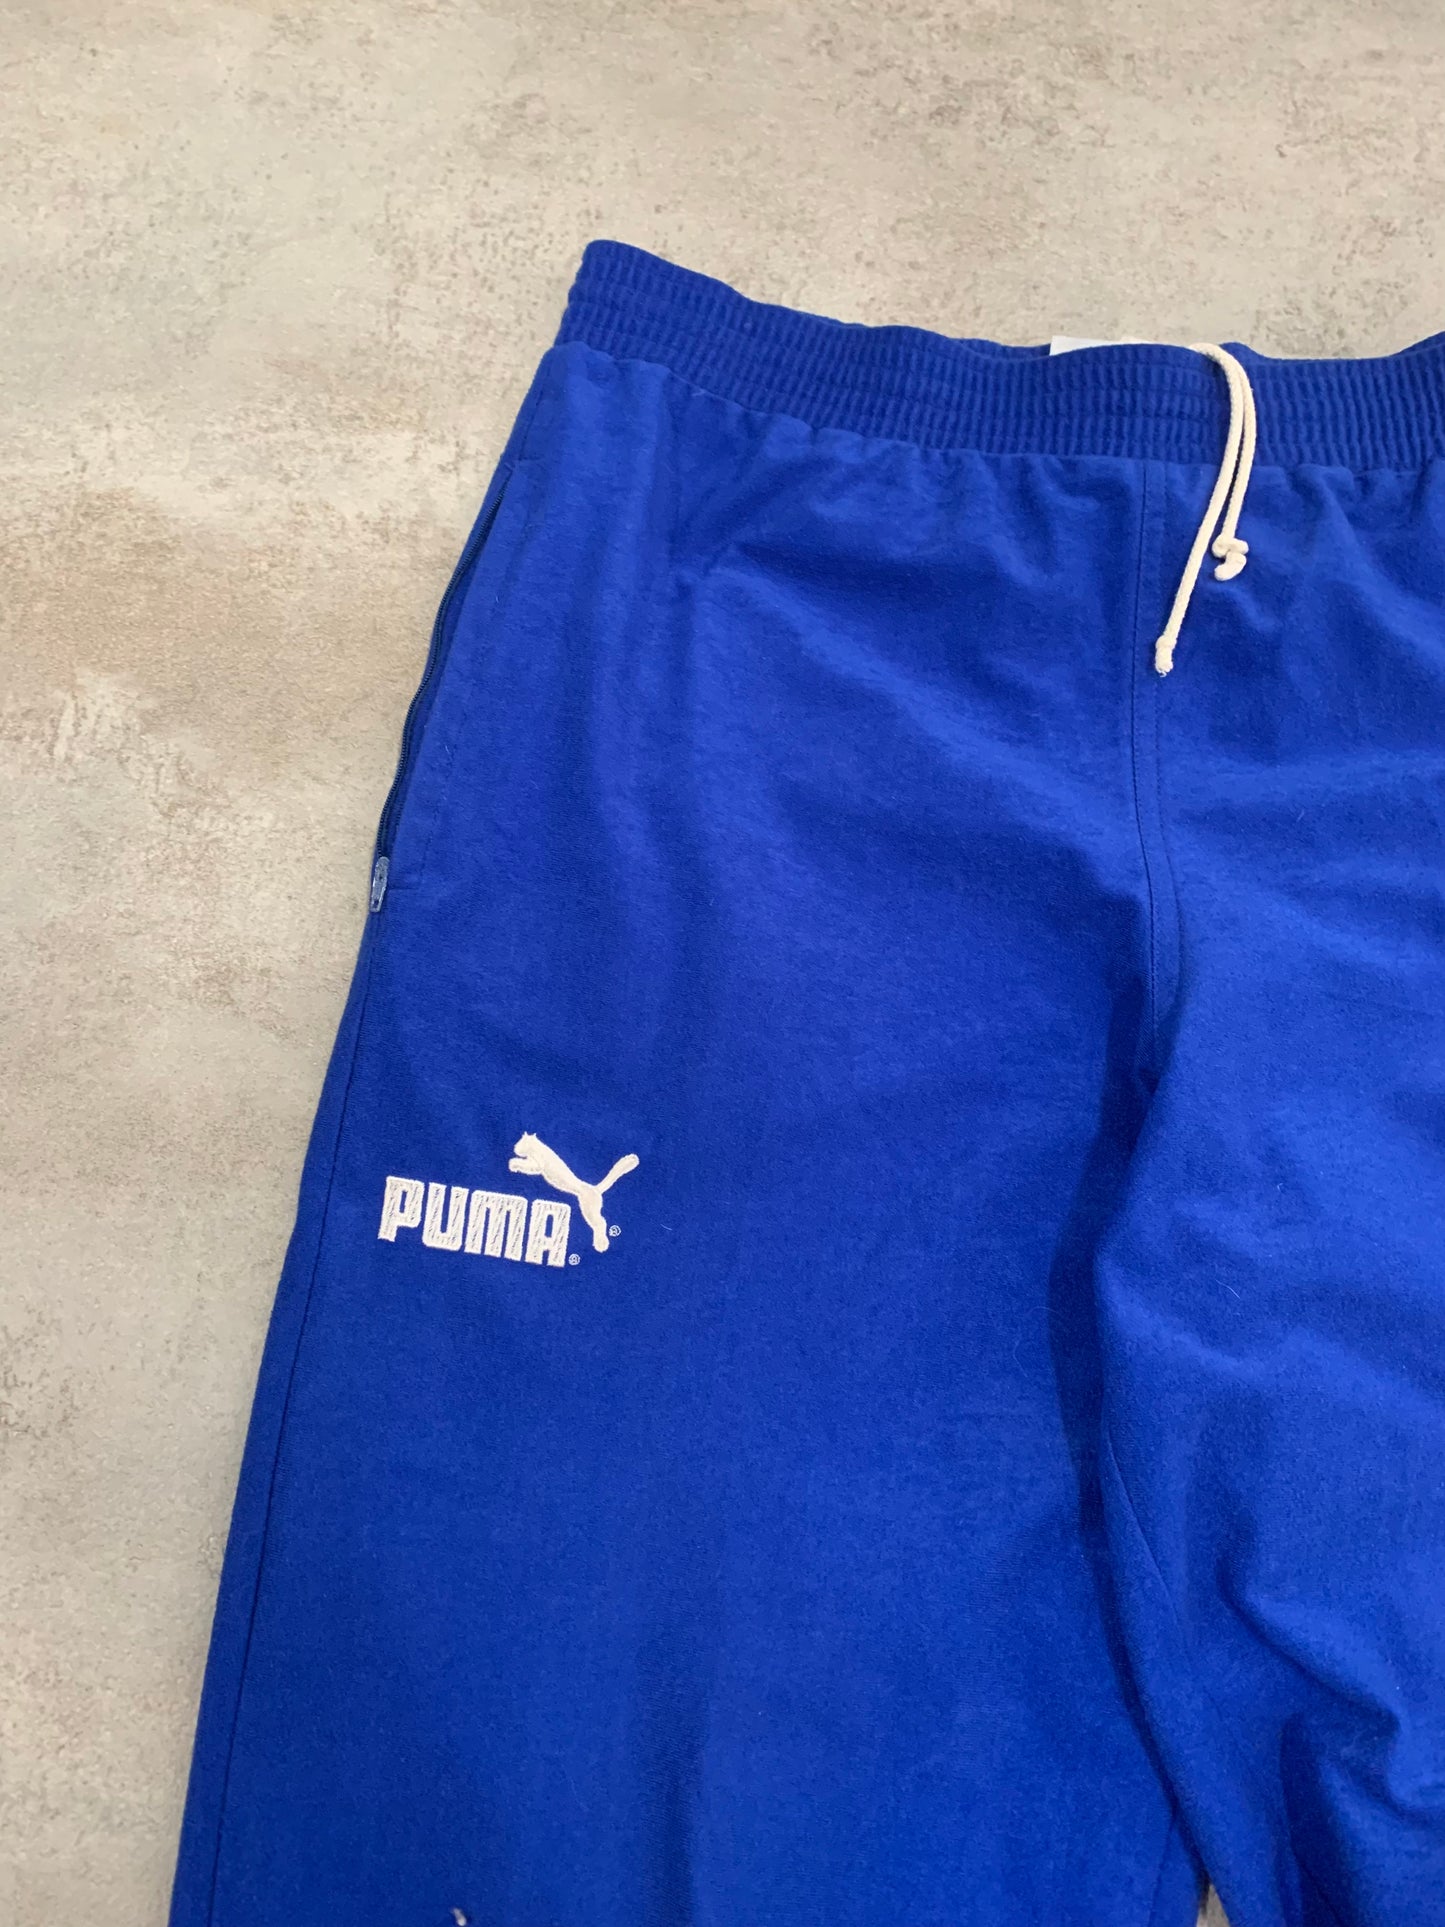 Vintage Puma Spanish 90's Pants - M